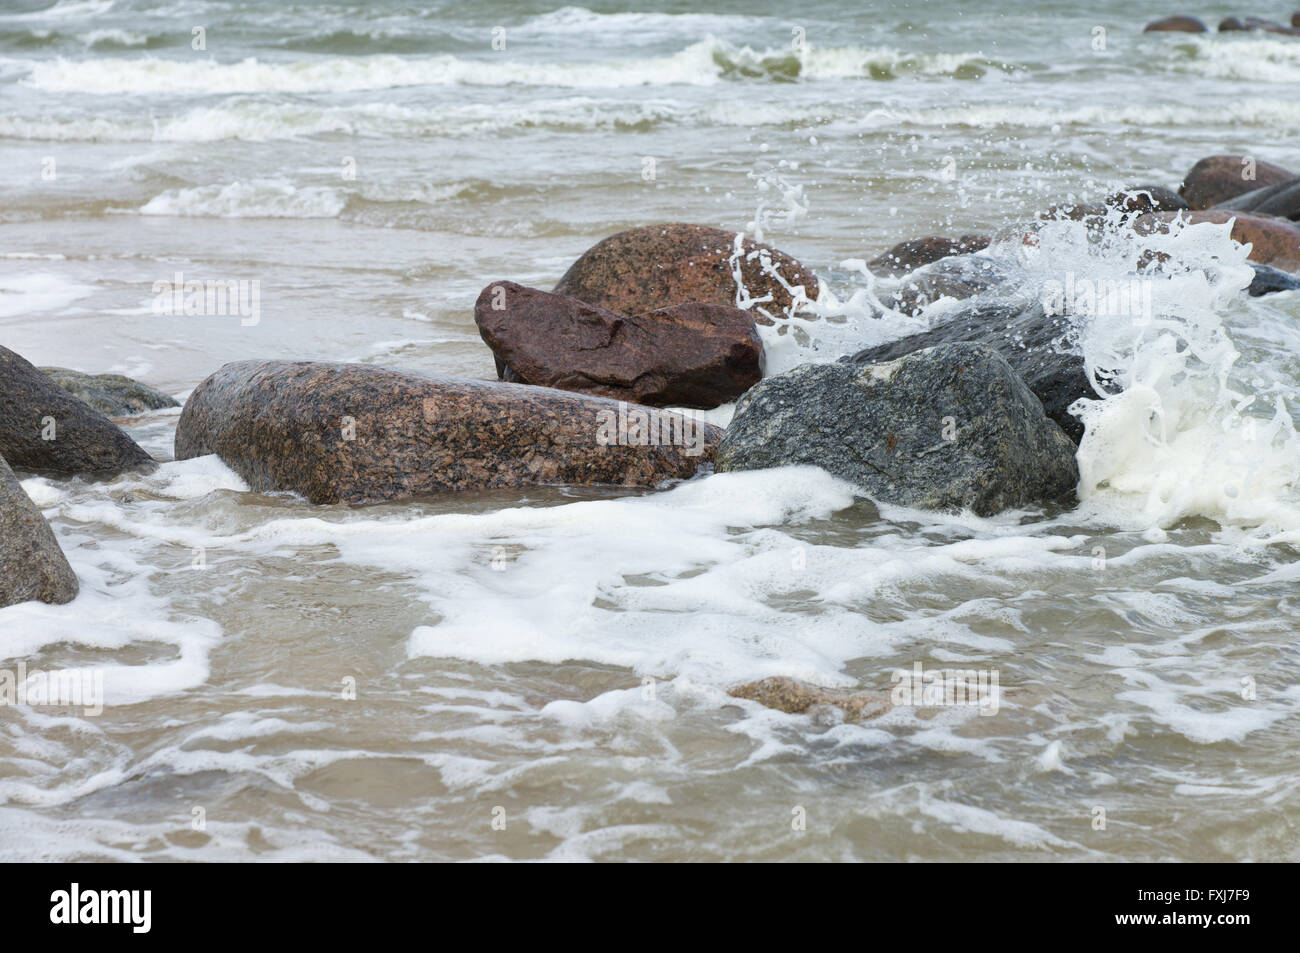 Des pierres se trouvent dans une mer déchaînée sous les coups de grosses vagues Banque D'Images